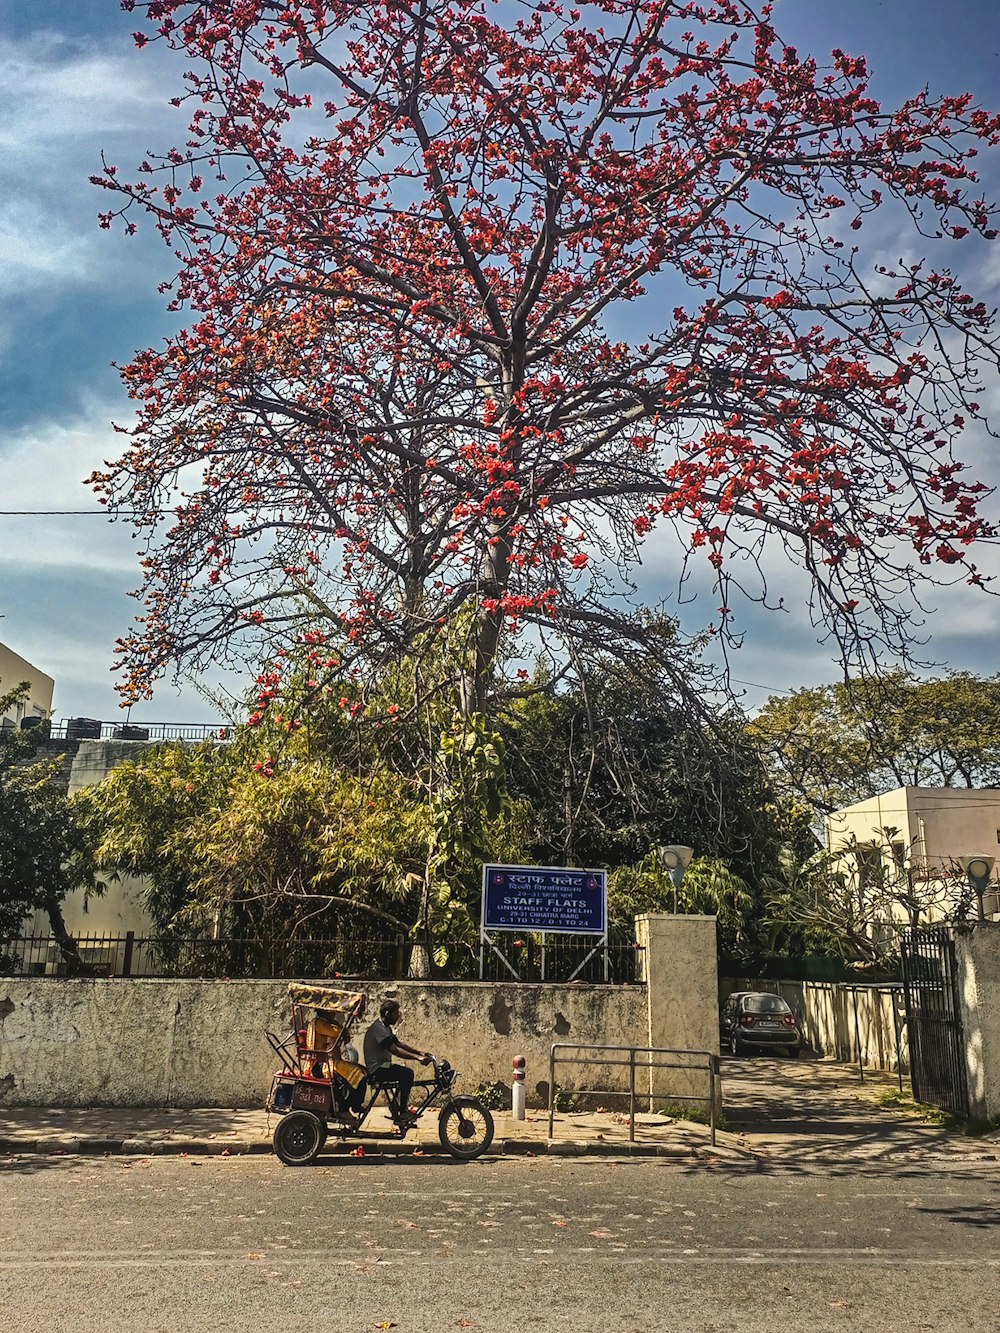 uma motocicleta estacionada ao lado de uma árvore com flores vermelhas